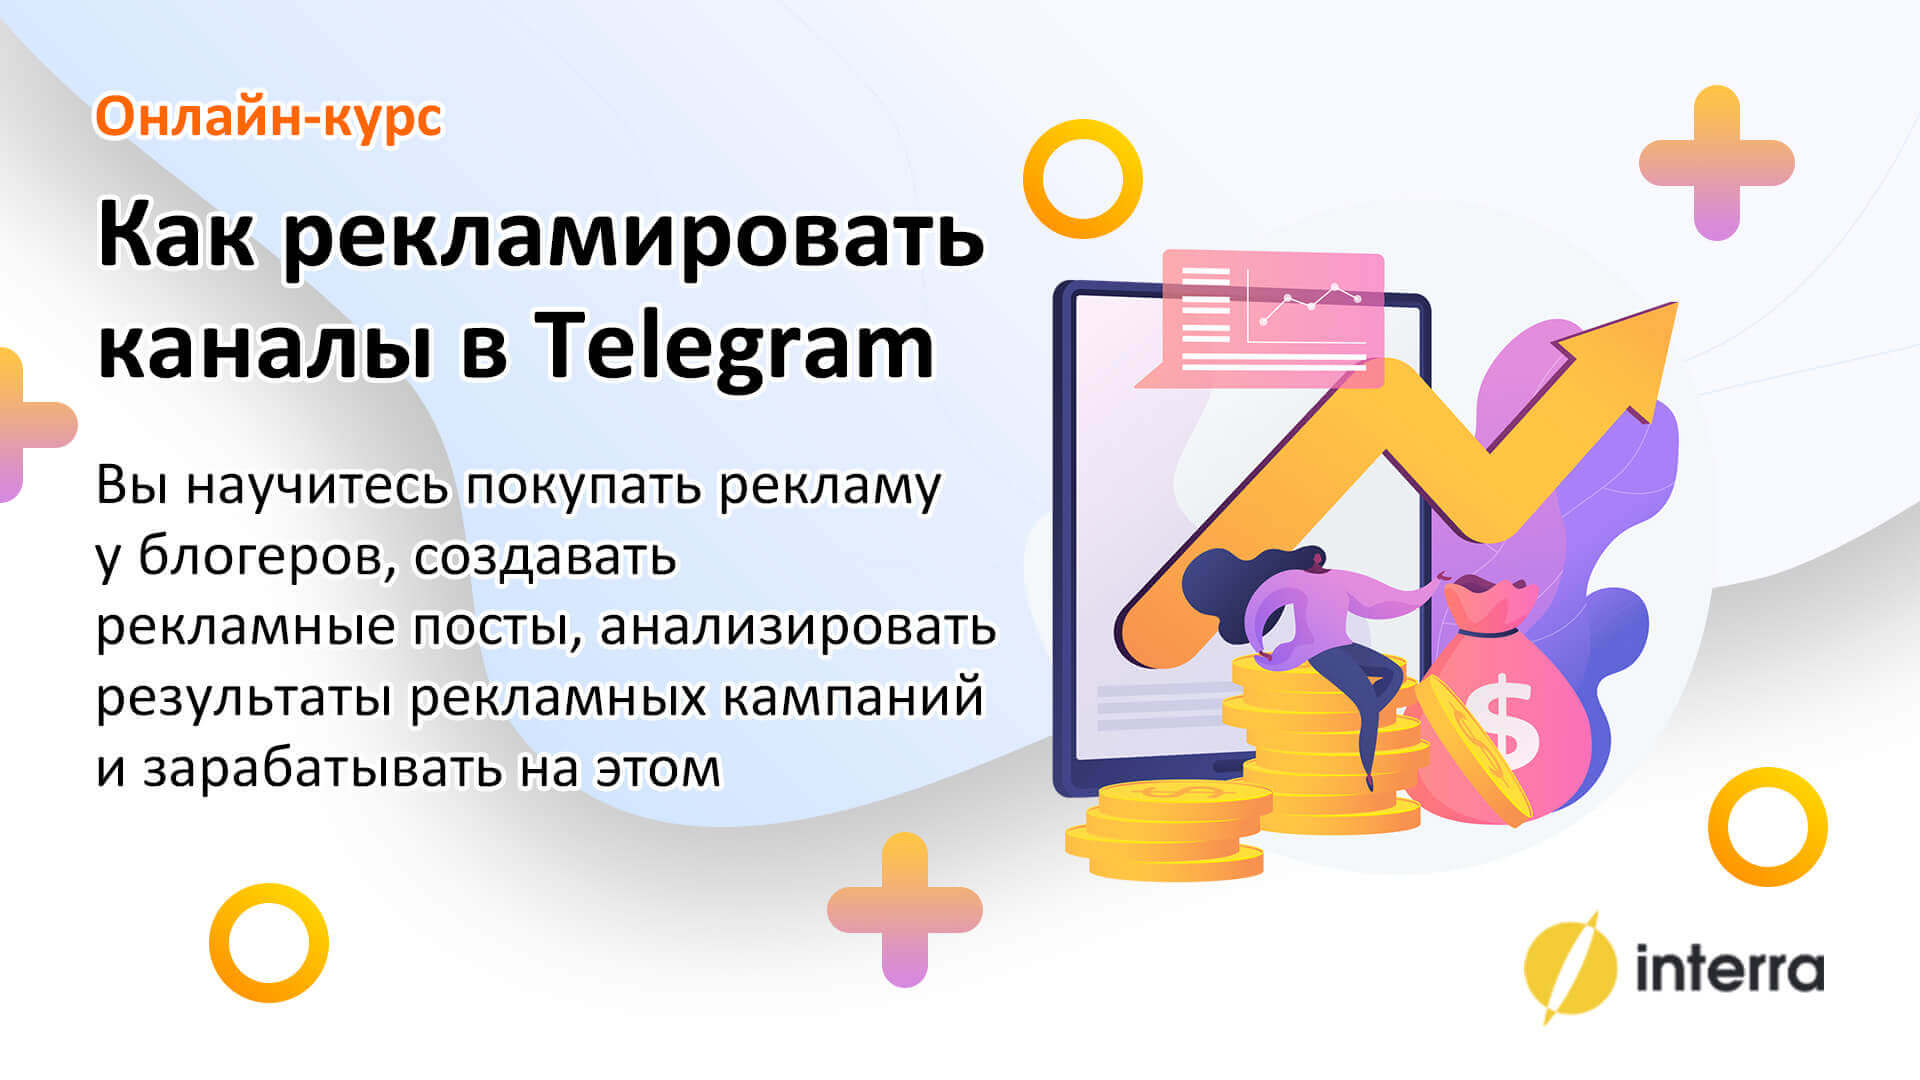 Interra — Как рекламировать каналы в Telegram